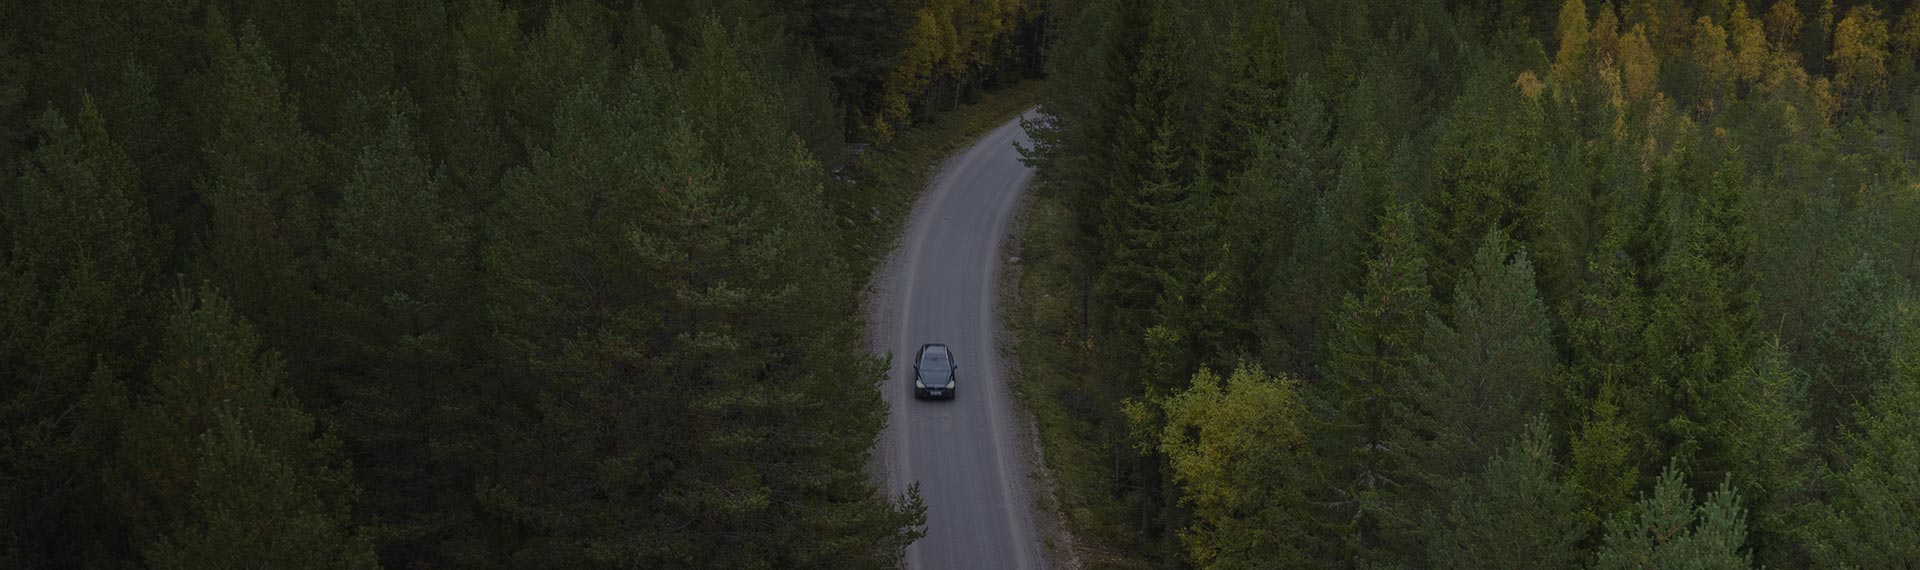 Carro passando por uma estrada na floresta